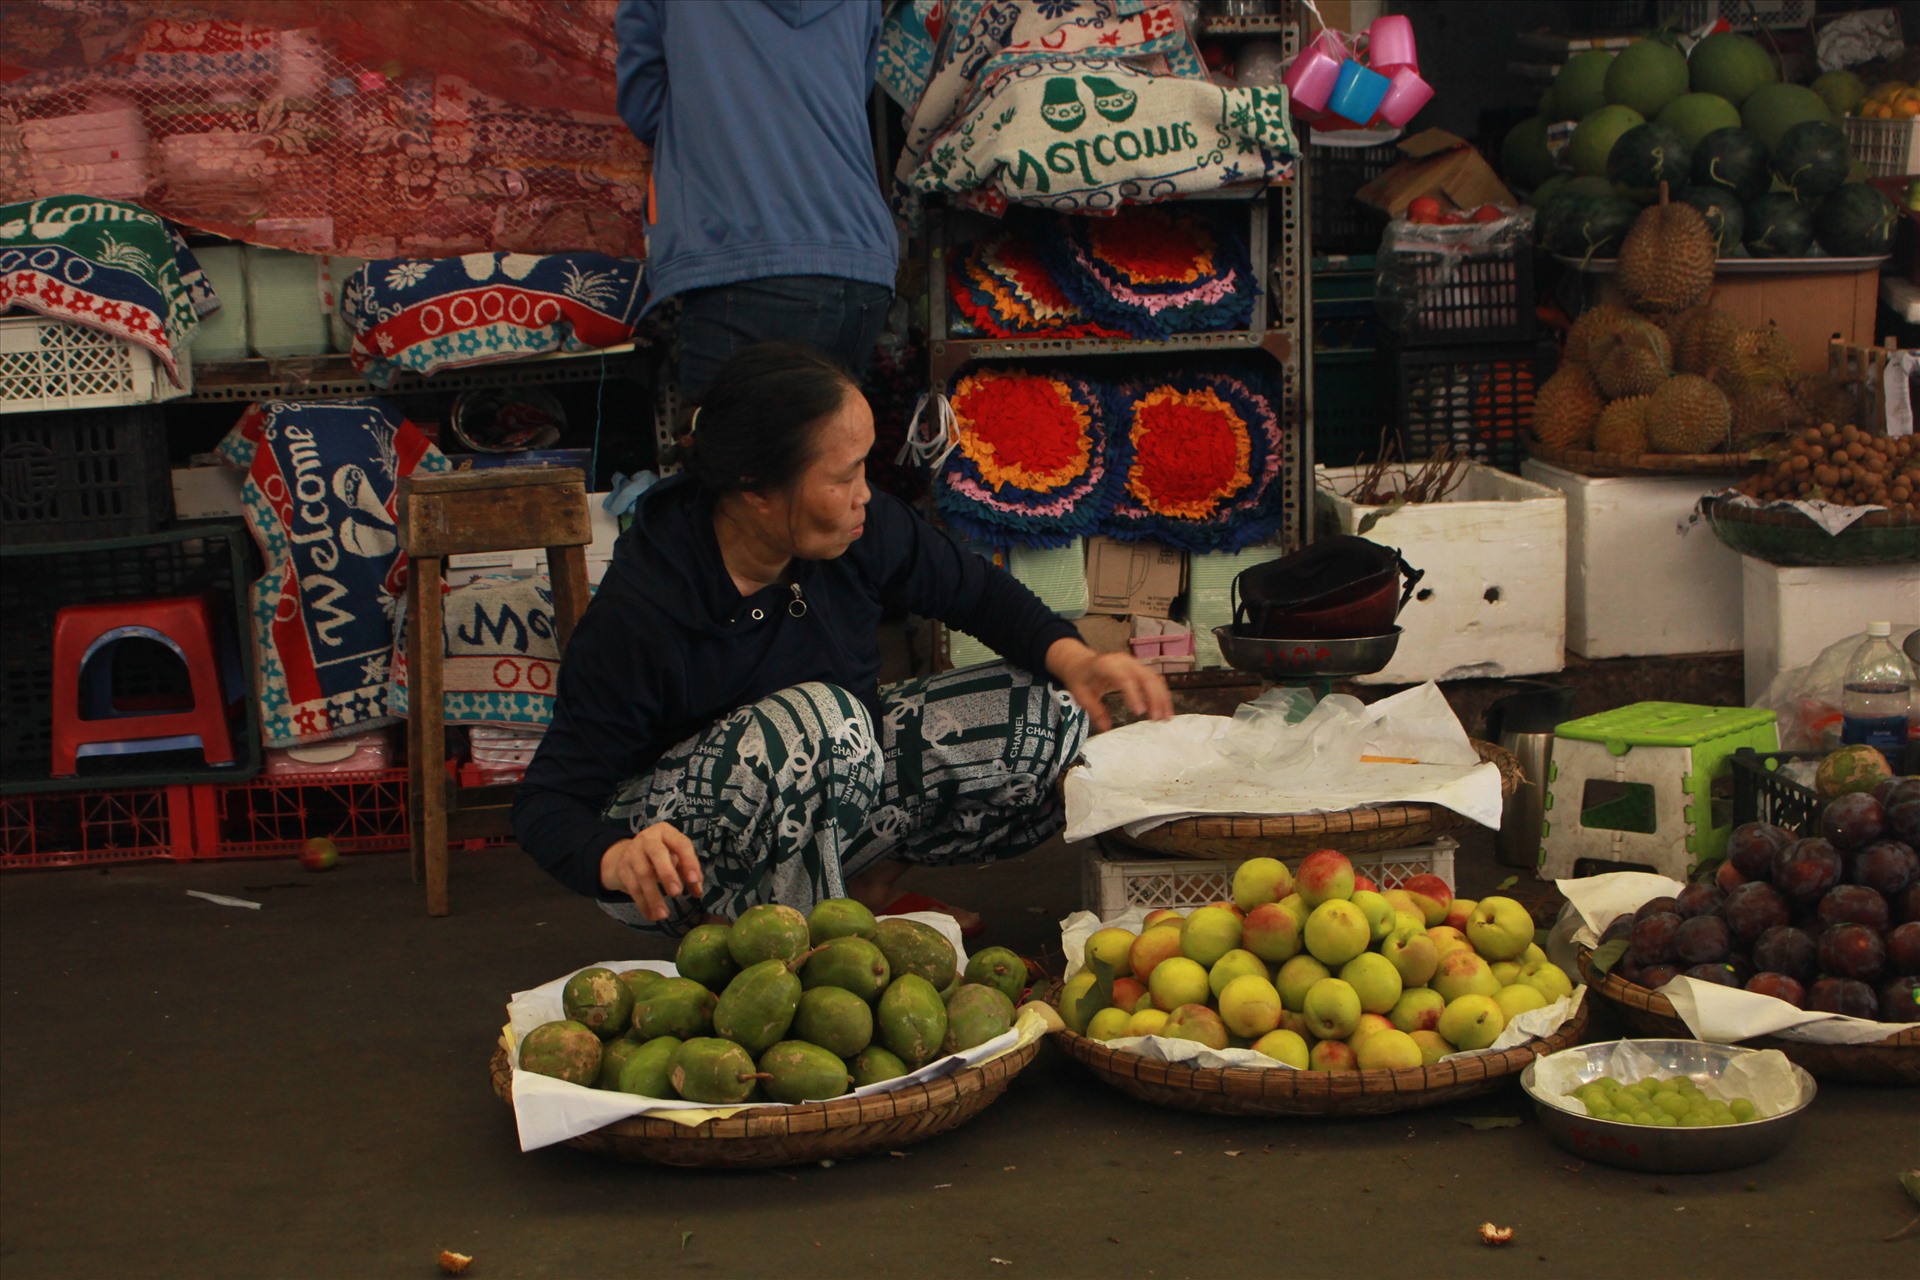 Tại chợ Cồn thì các quầy hàng bán thực phẩm vẫn hút khách, còn với những hàng như  trái cây, bánh mứt vẫn kén khách.